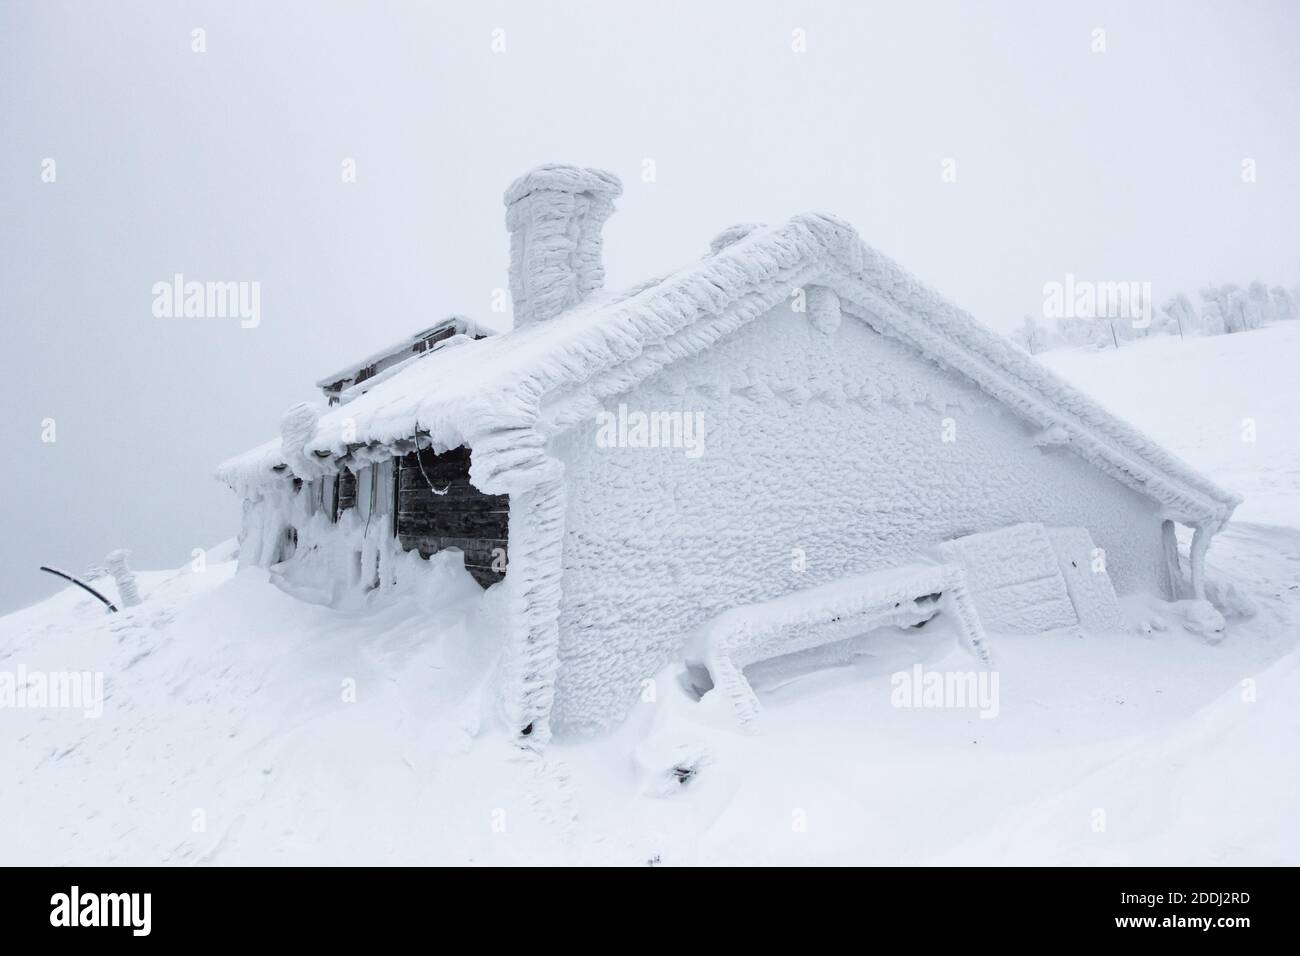 Paysage panoramique d'hiver avec chalet sous la neige, brouillard. Arrière-plan d'hiver de neige et de givre.pittoresque et magnifique scène d'hiver.vie de montagne étonnante Banque D'Images